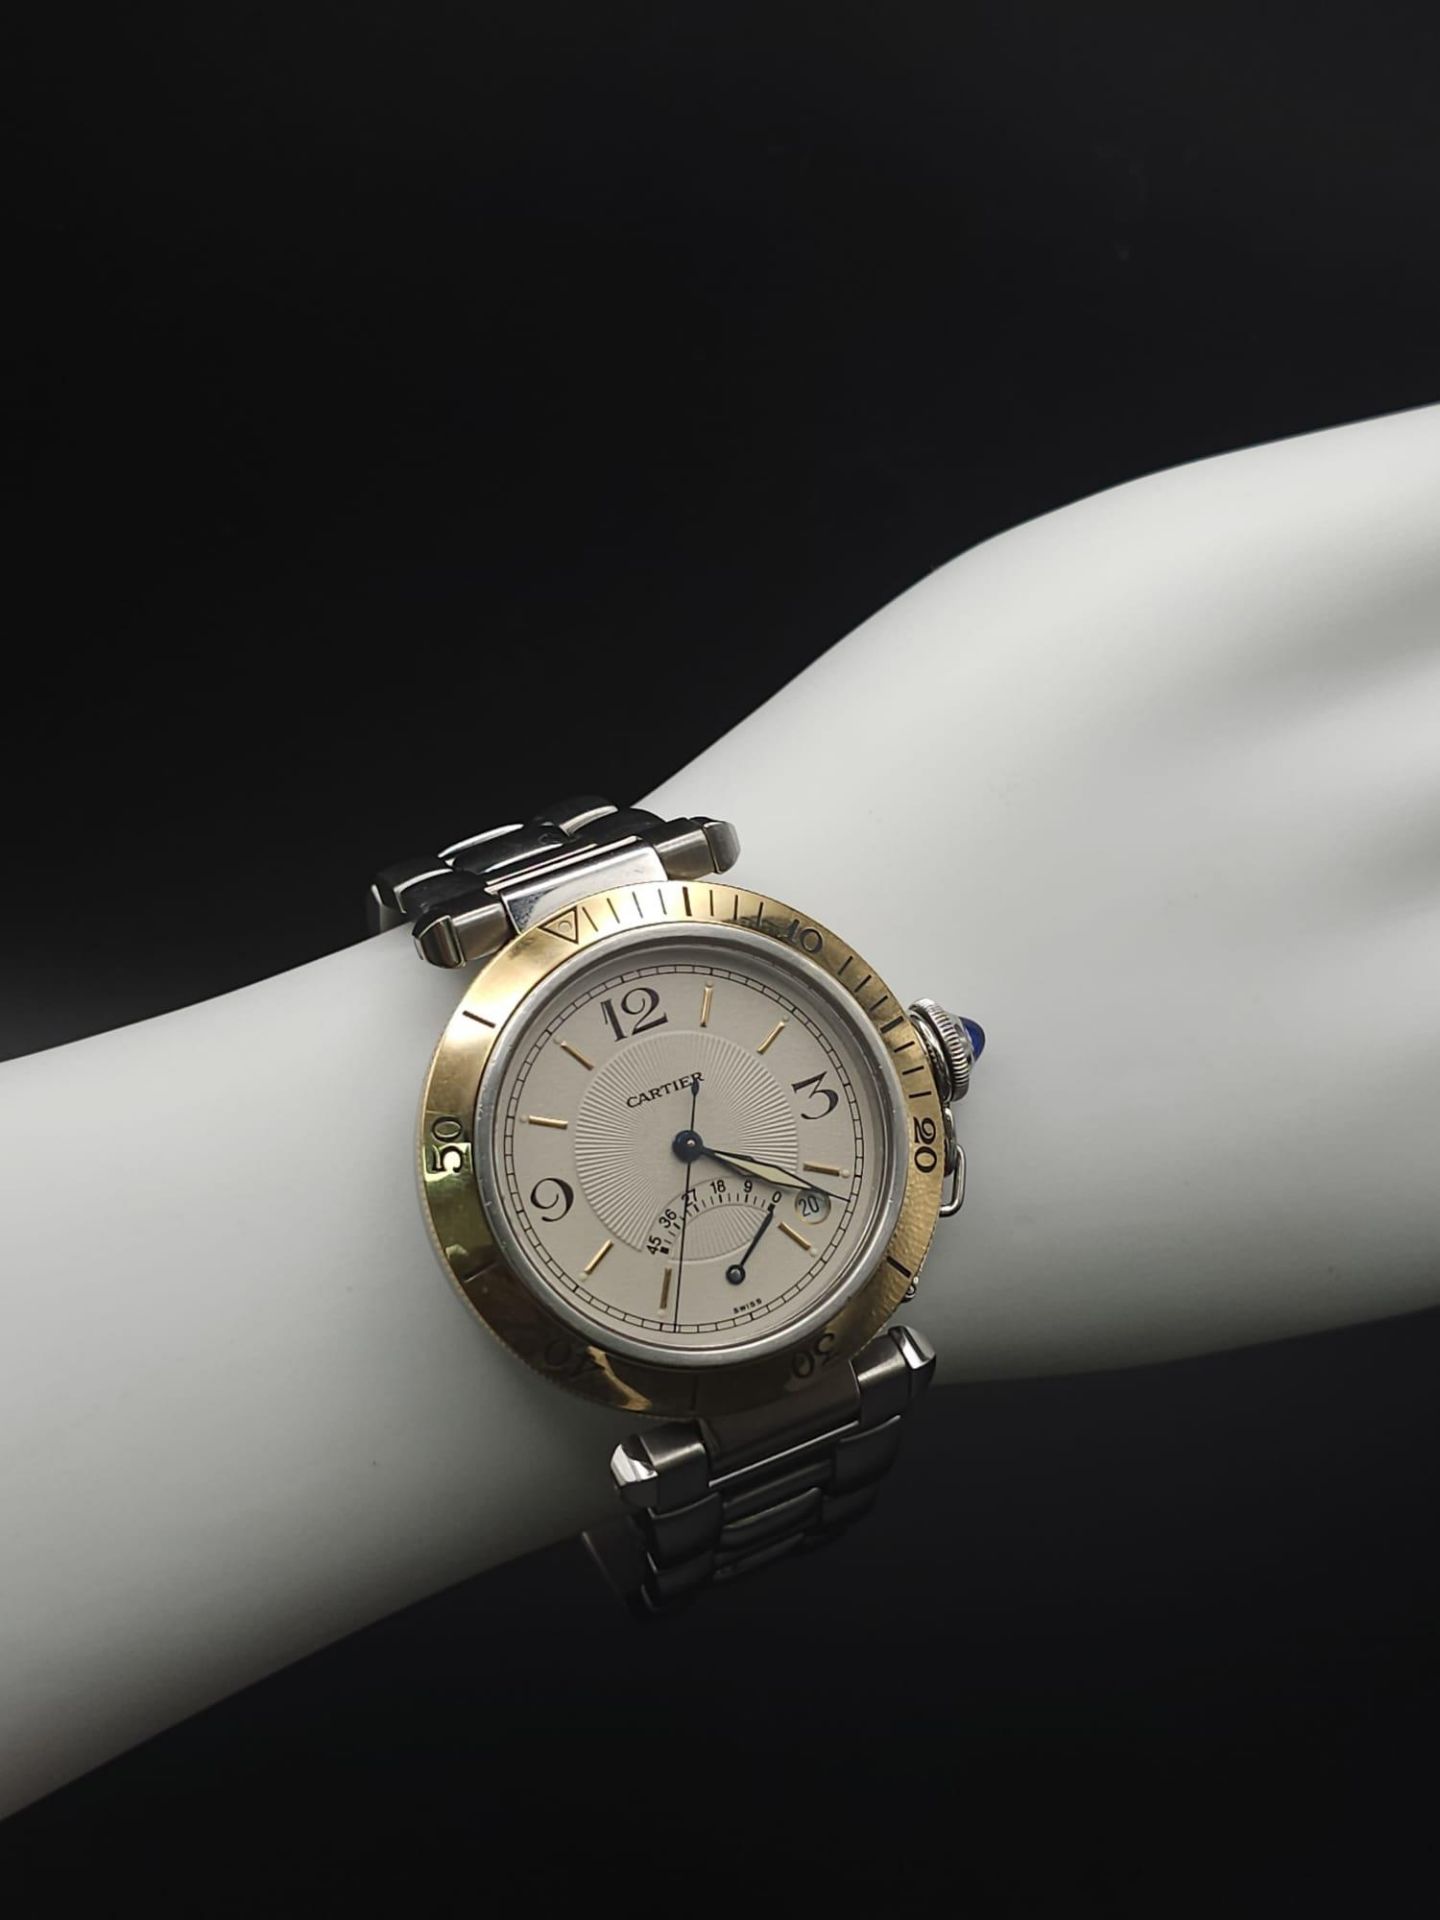 A Cartier de Pasha Automatic Gents Watch. Stainless steel bracelet and case - 38mm. Cream dial - Bild 22 aus 23